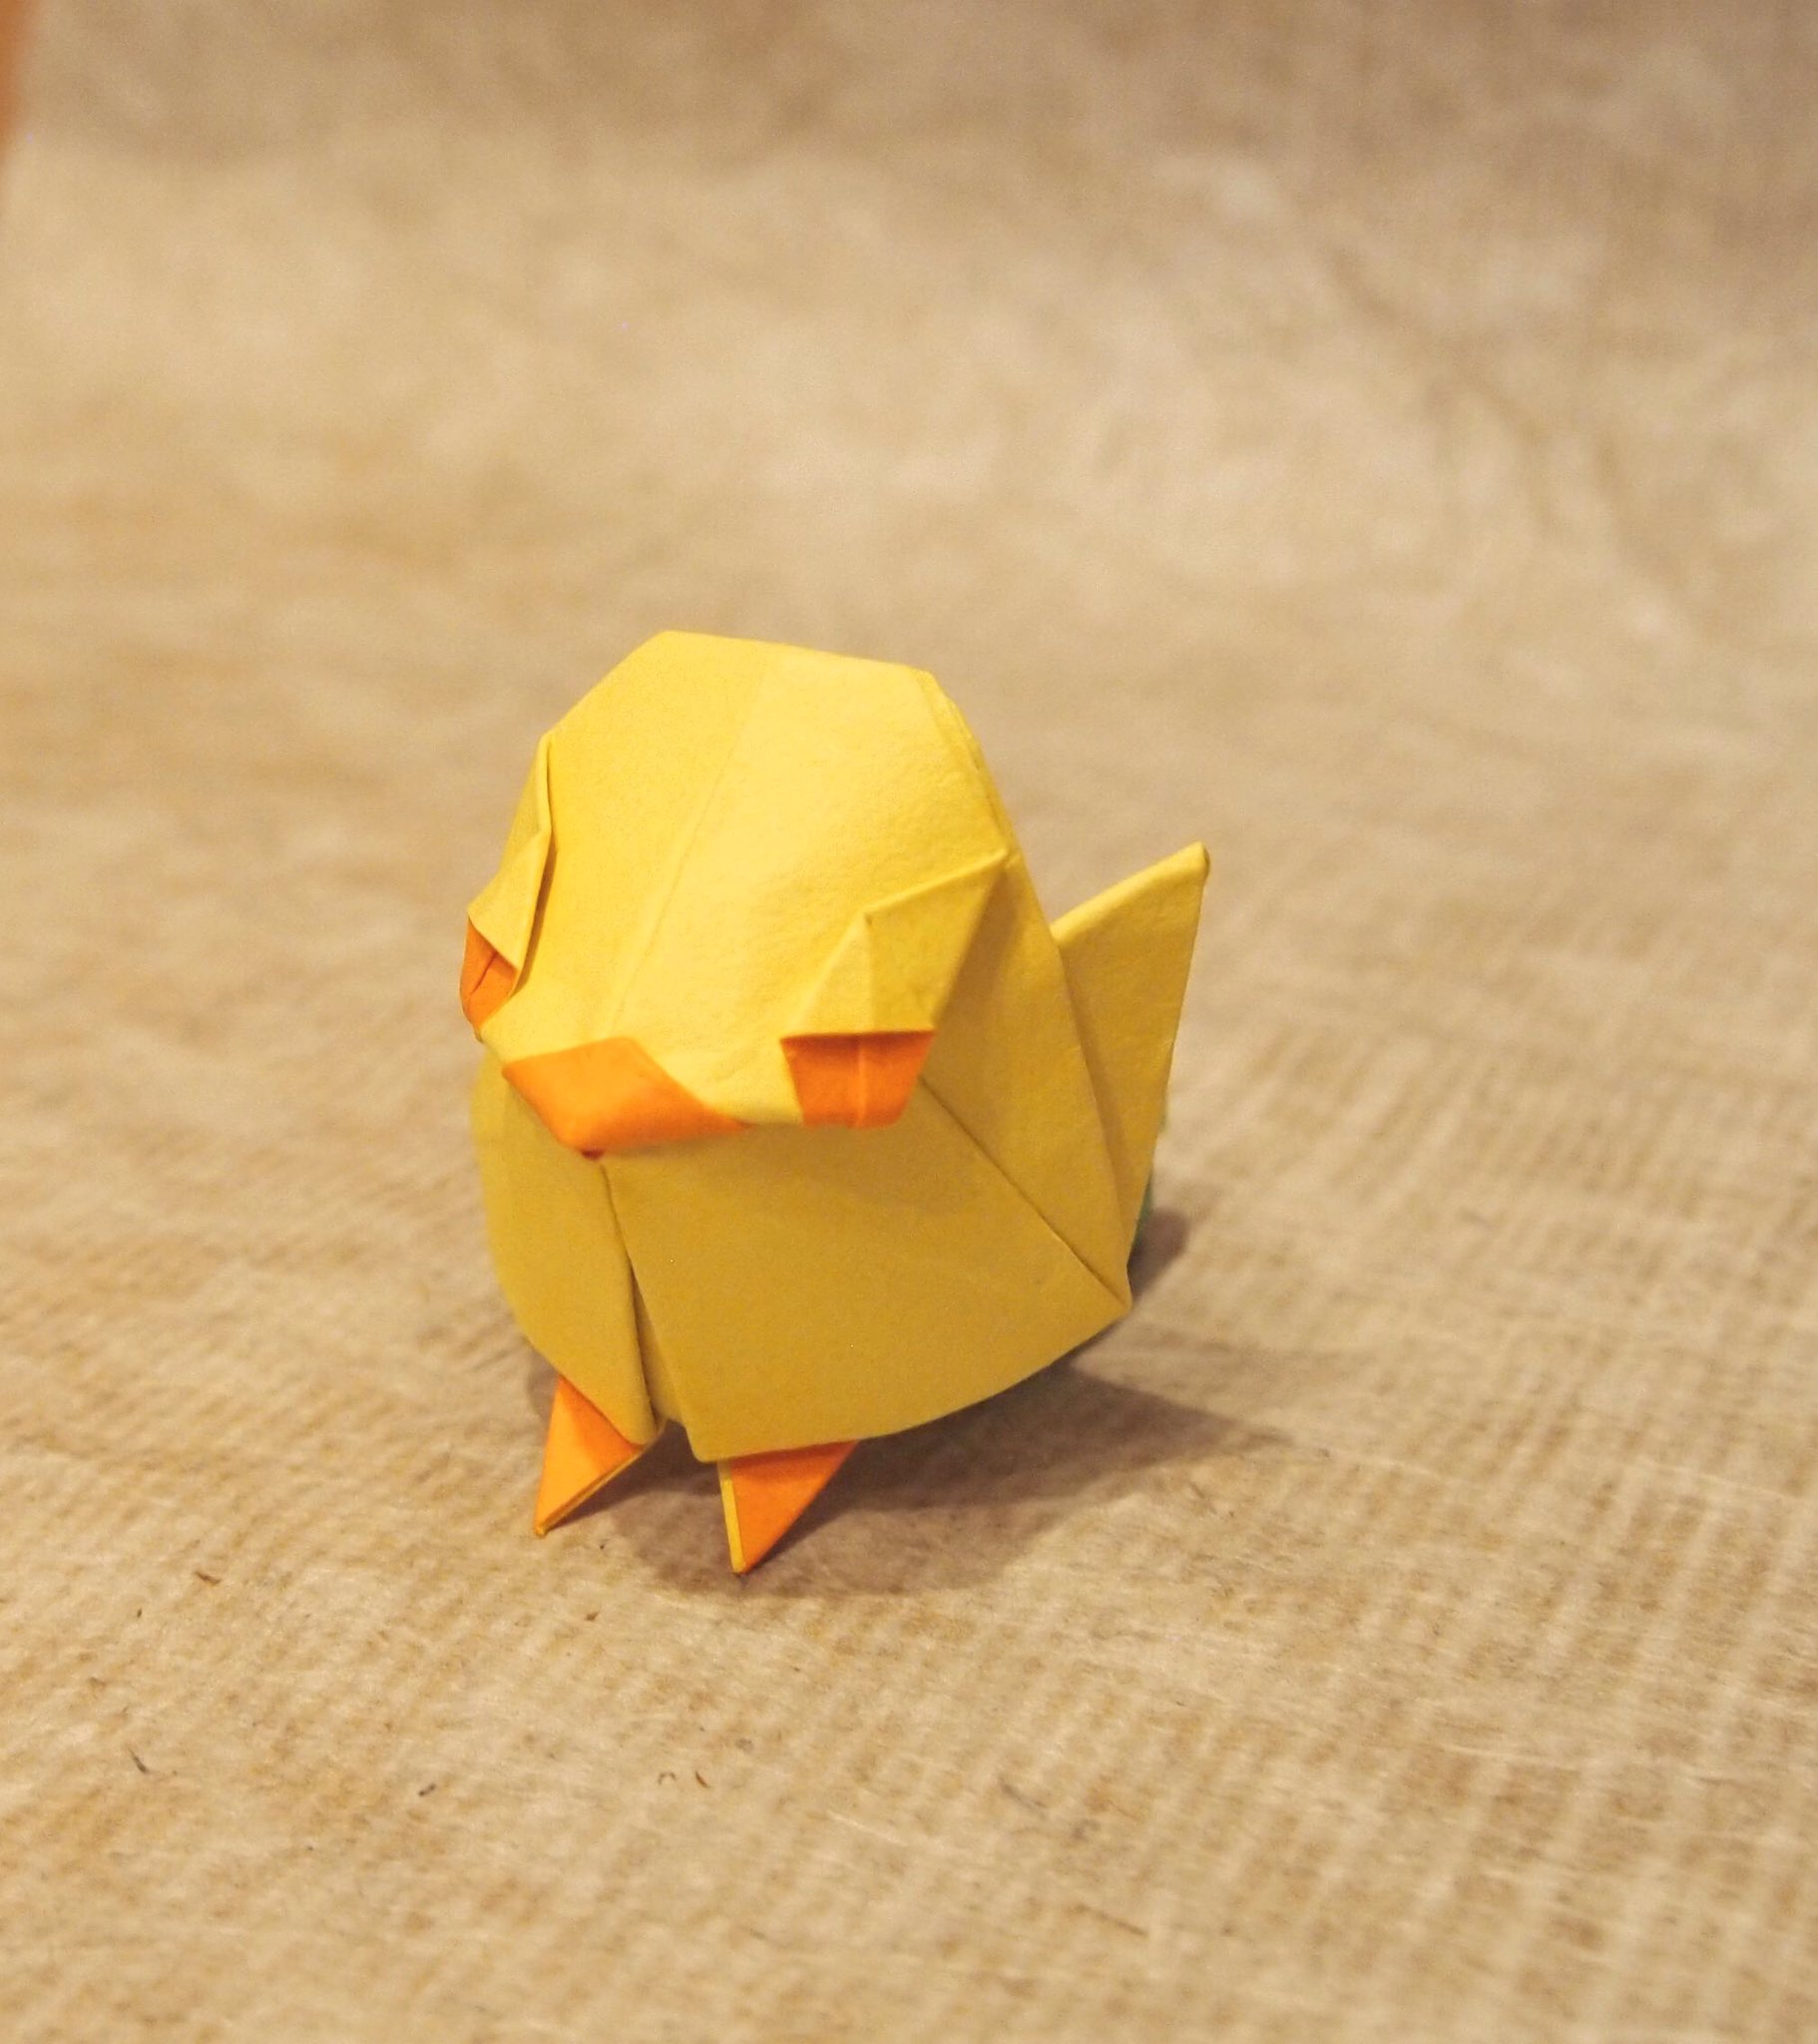 一匹柴犬 折り紙作品 ひよこ 創作 折り 一匹柴犬 数年前に折ったヒヨコ が無理矢理仕上げであまり納得できてなかったので再トライ シンプルにかわいいデザインにできました 魚の基本的より Origami Chick 折り紙作品 折り紙 ひよこ T